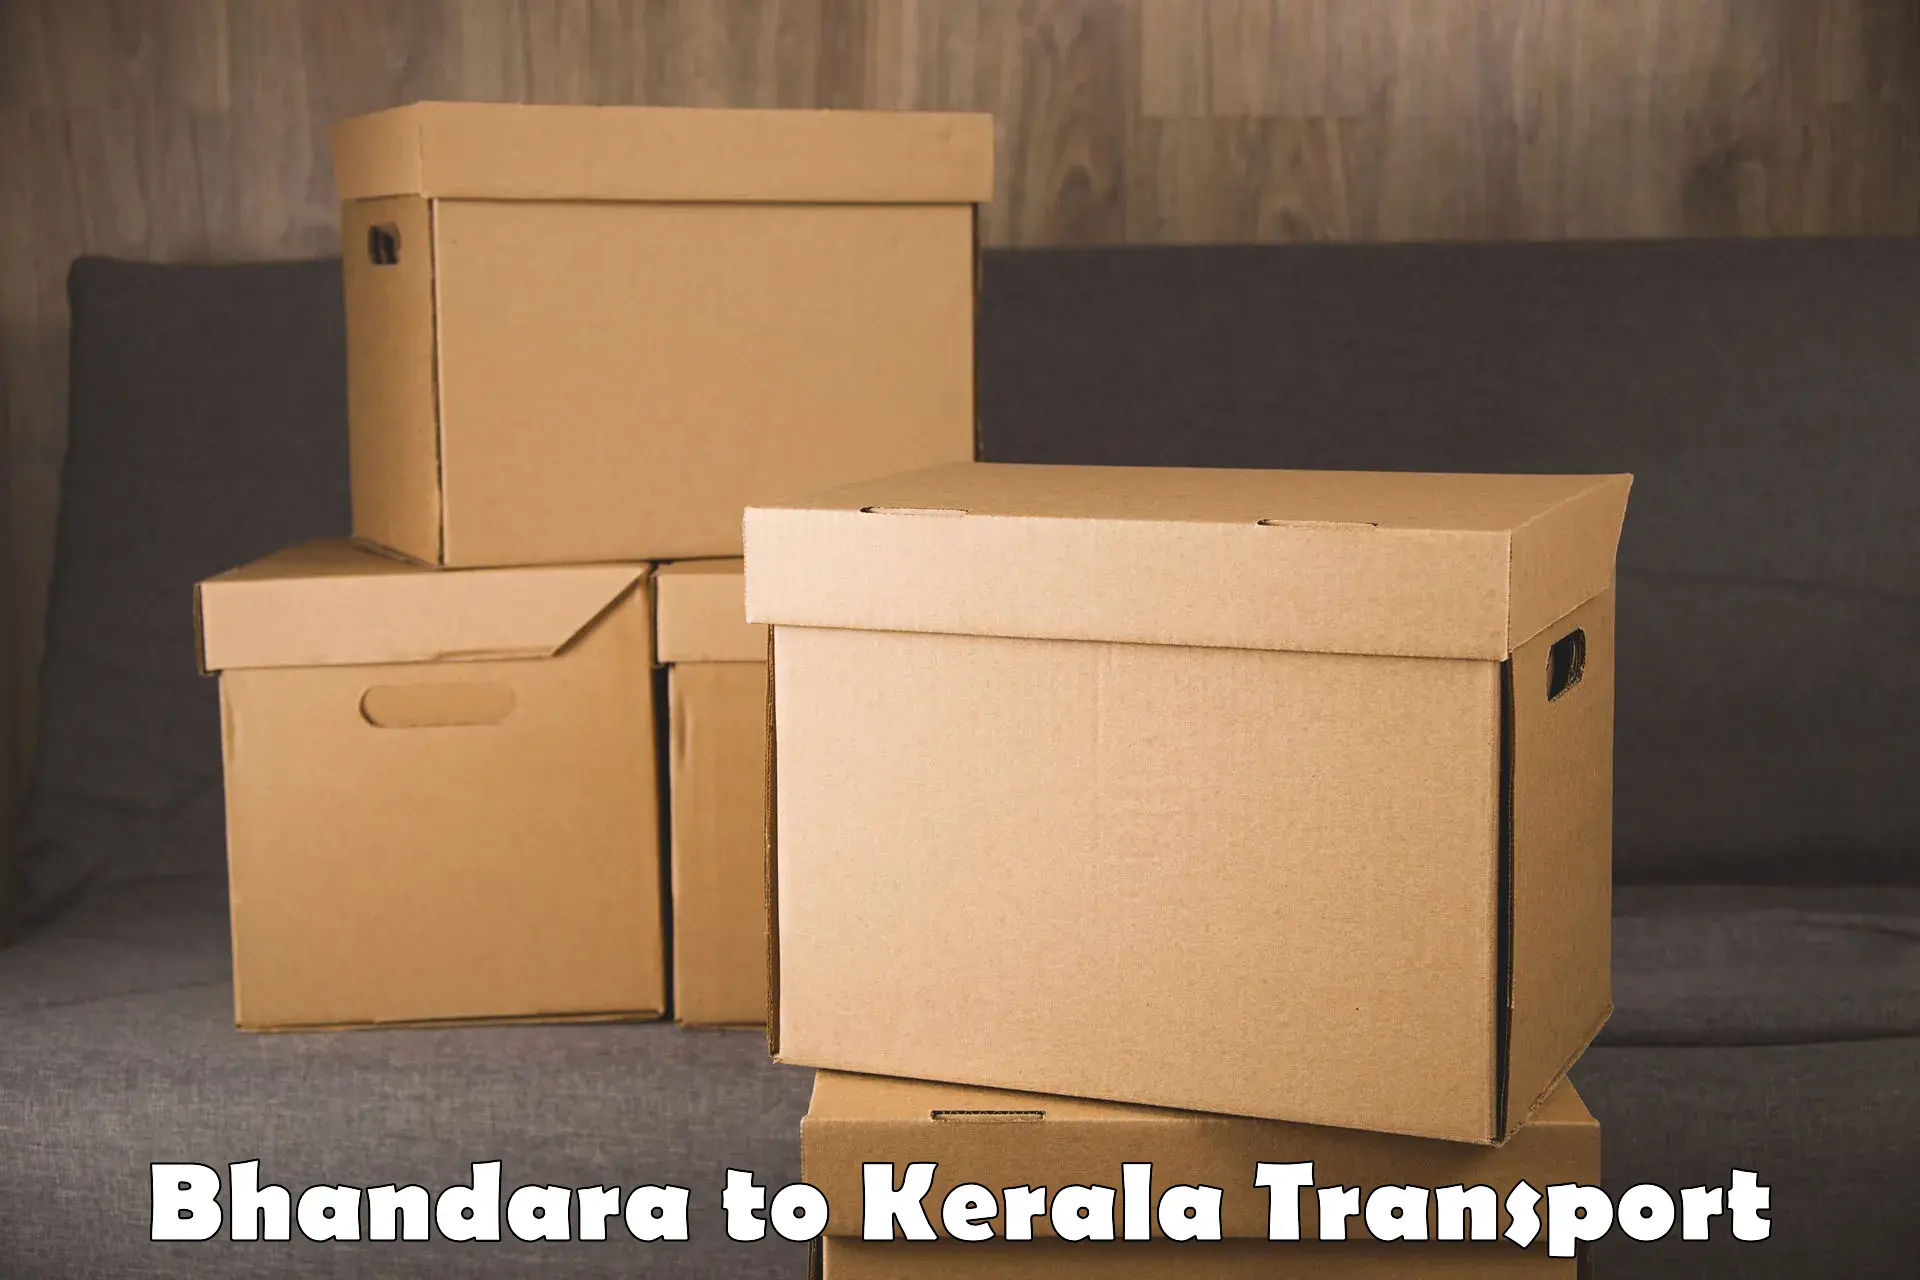 Delivery service Bhandara to Kattappana